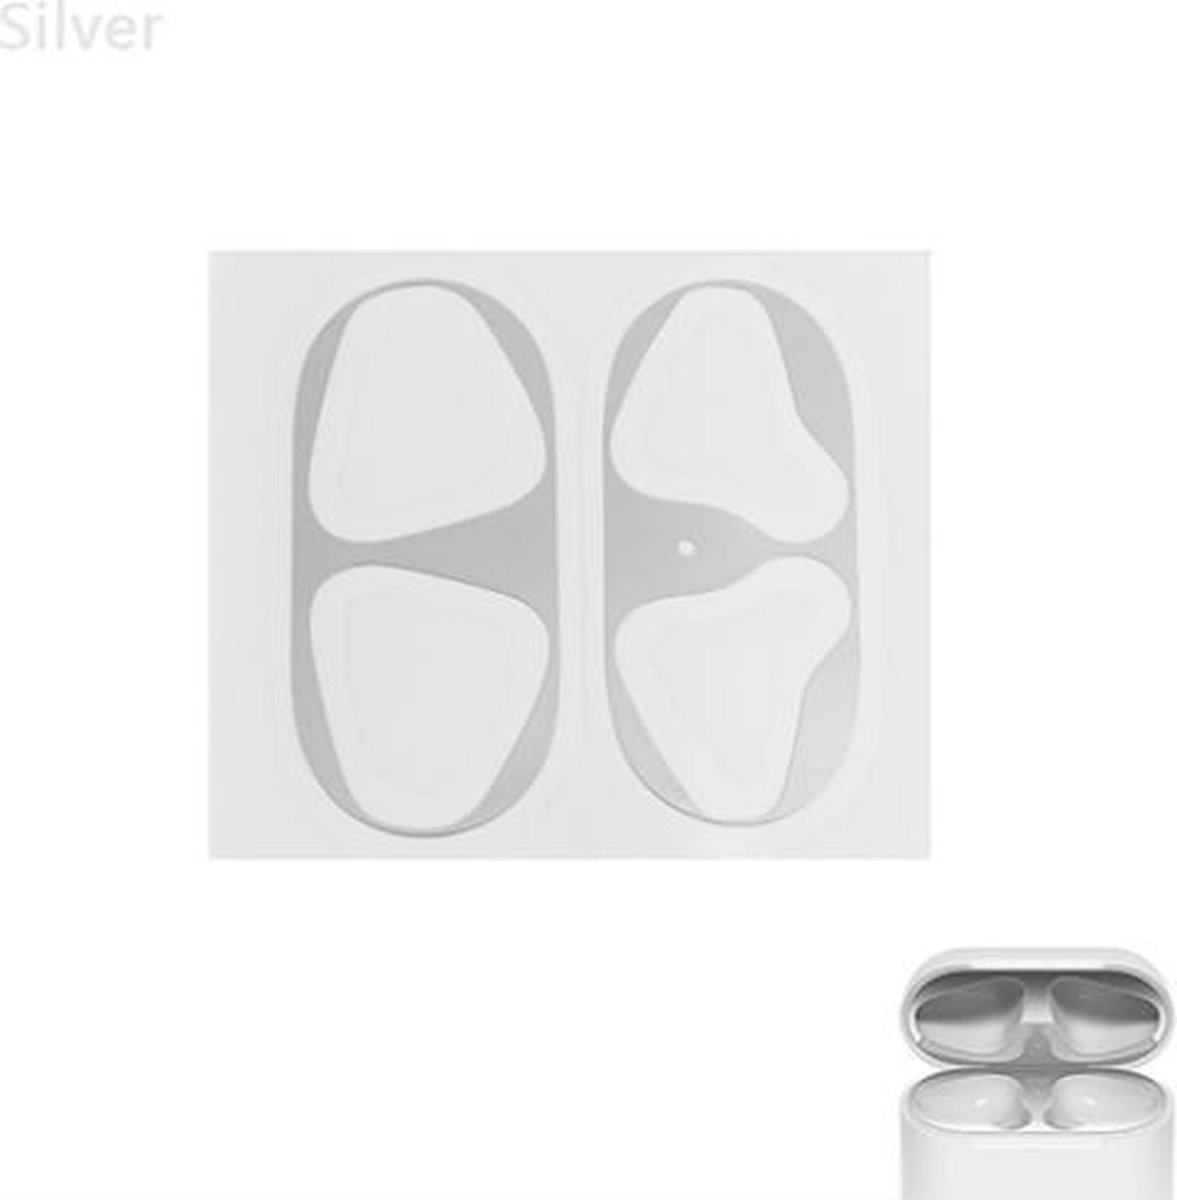 Metalen sticker geschikt voor Airpods - Accessoire voor Airpods - Anti magnetisch stof - Vuil bescherming - Zilver set van 2 stuks